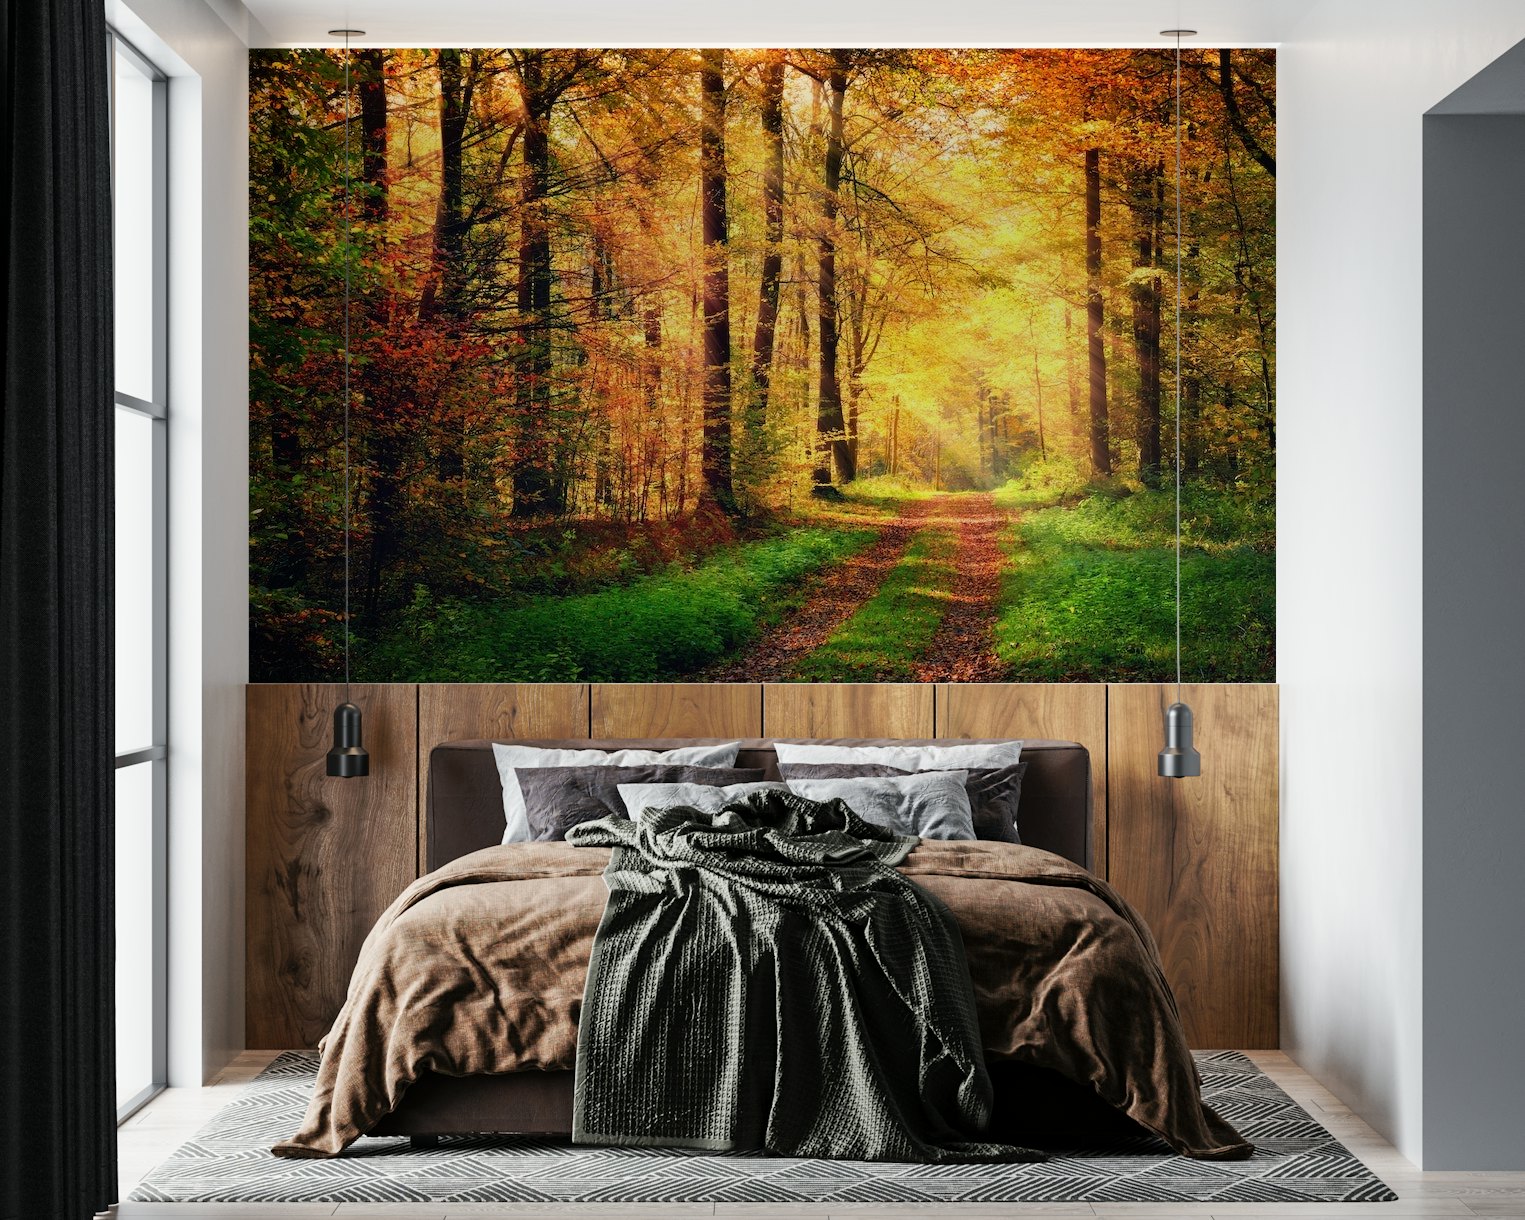 Autumn forest 2 wallpaper